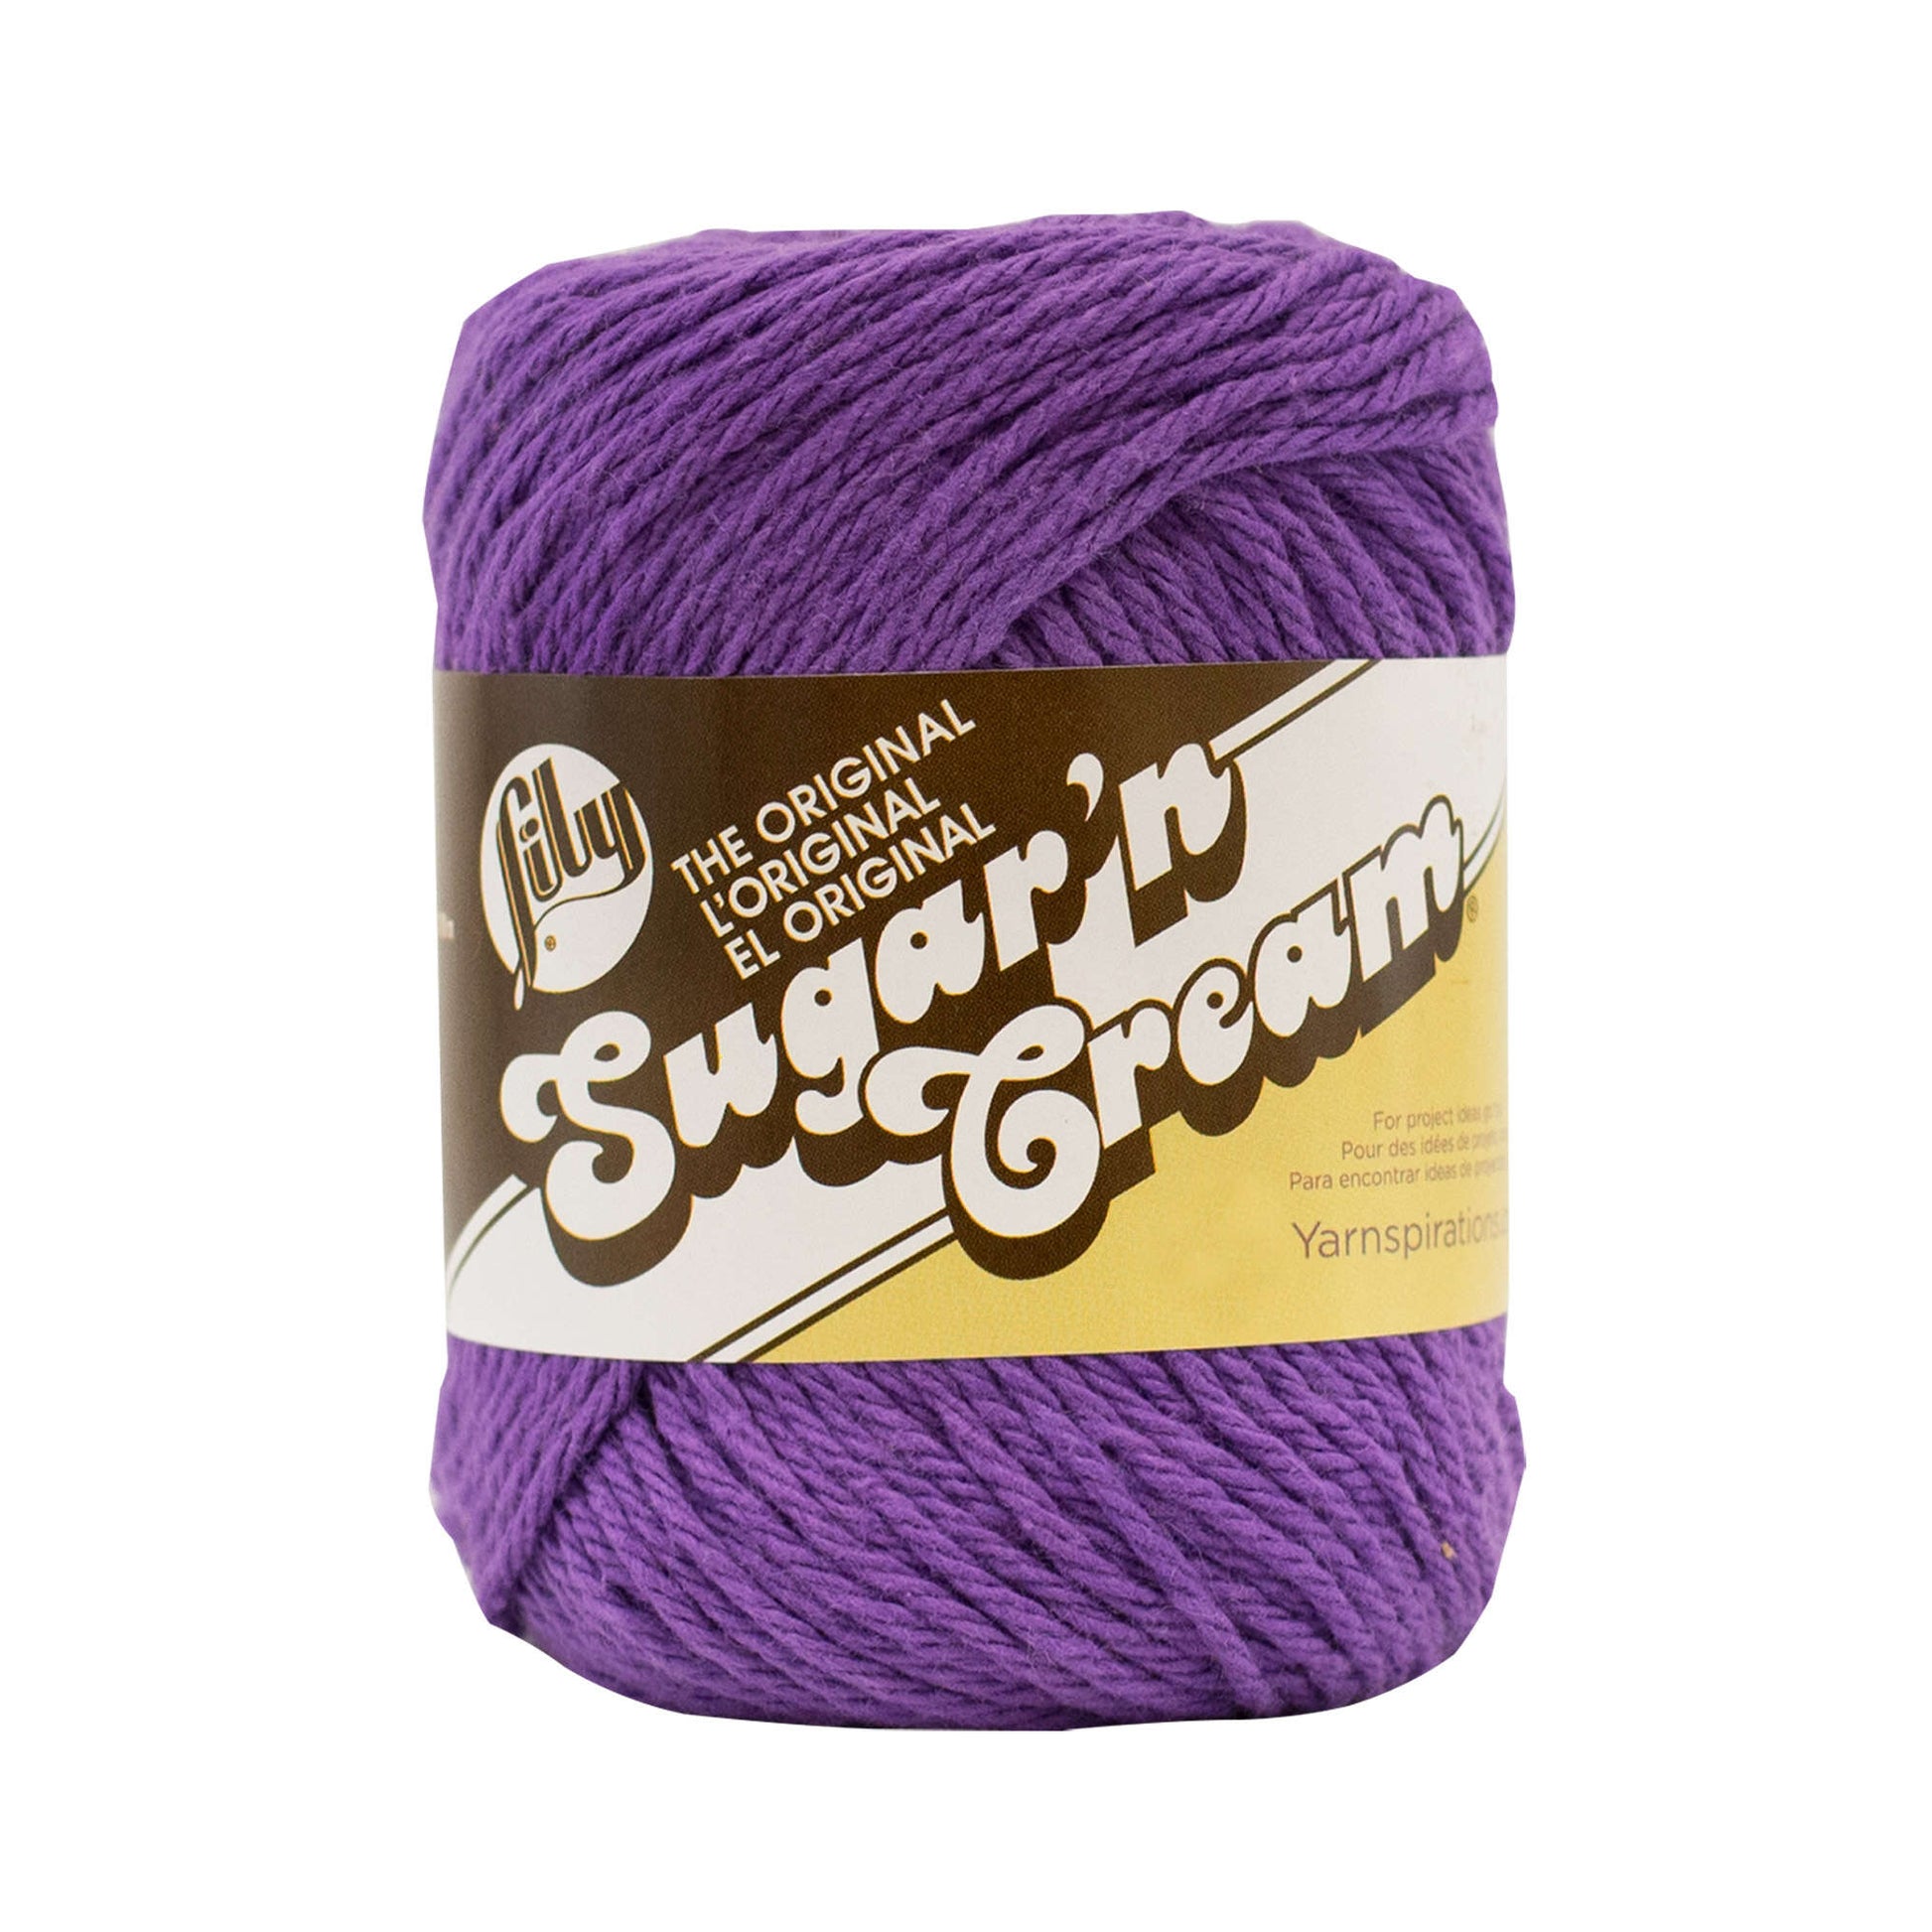 Lily Sugar'n Cream The Original Yarn